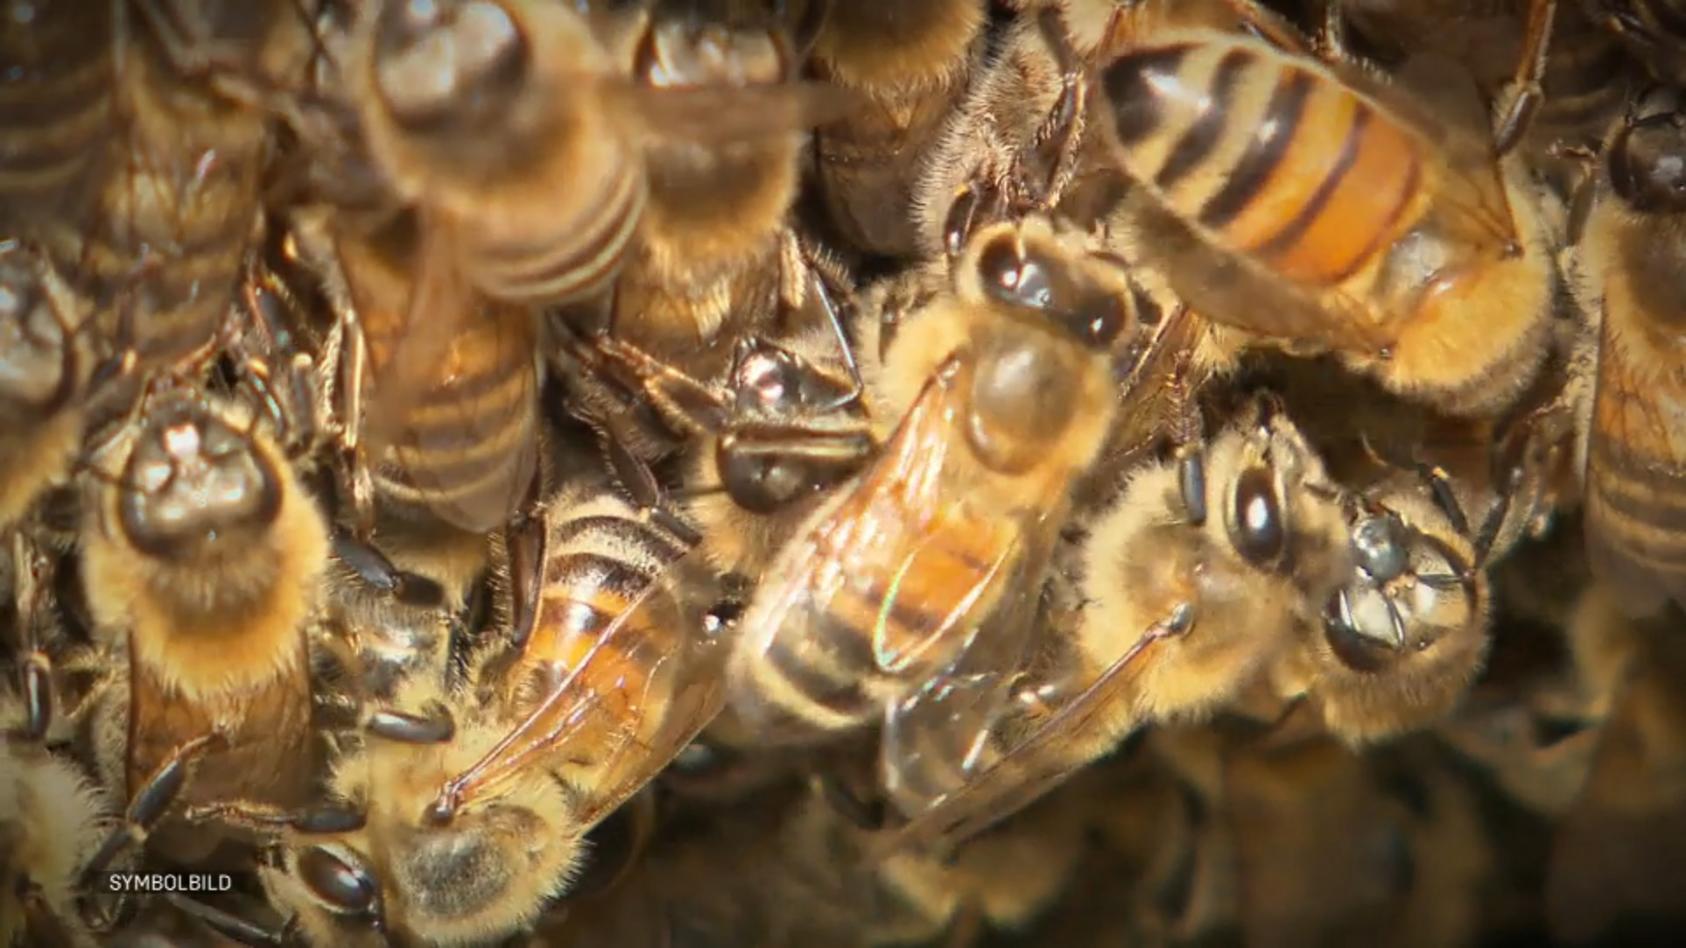 Imker hetzt Bienen auf Stadt-Mitarbeiter Wie ein Konflikt völlig eskalierte...